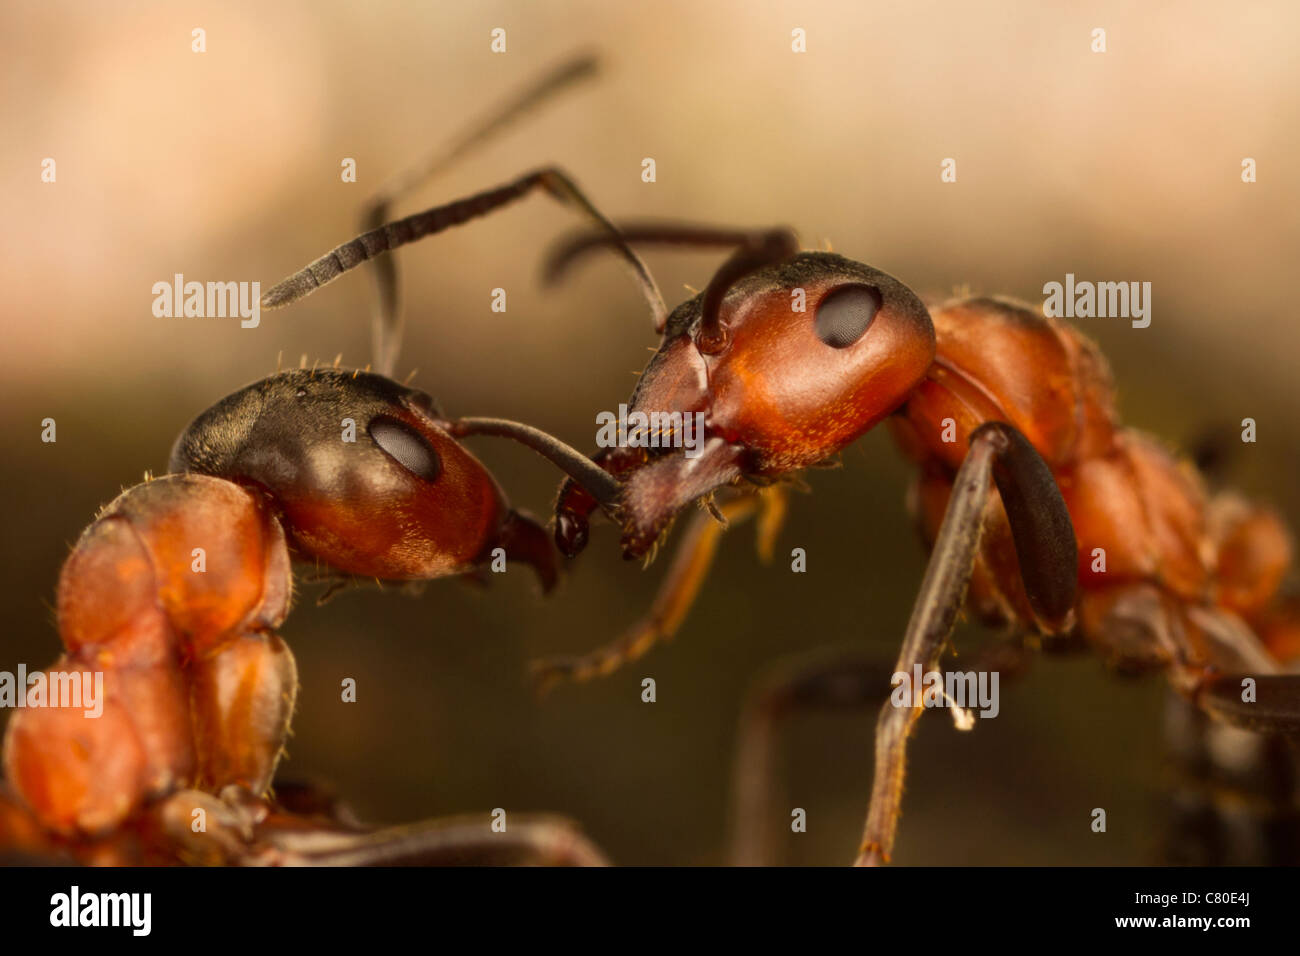 Ameisen (Formica Rufa) kommunizieren, ein bisschen, wenn sie sich treffen. Stockfoto